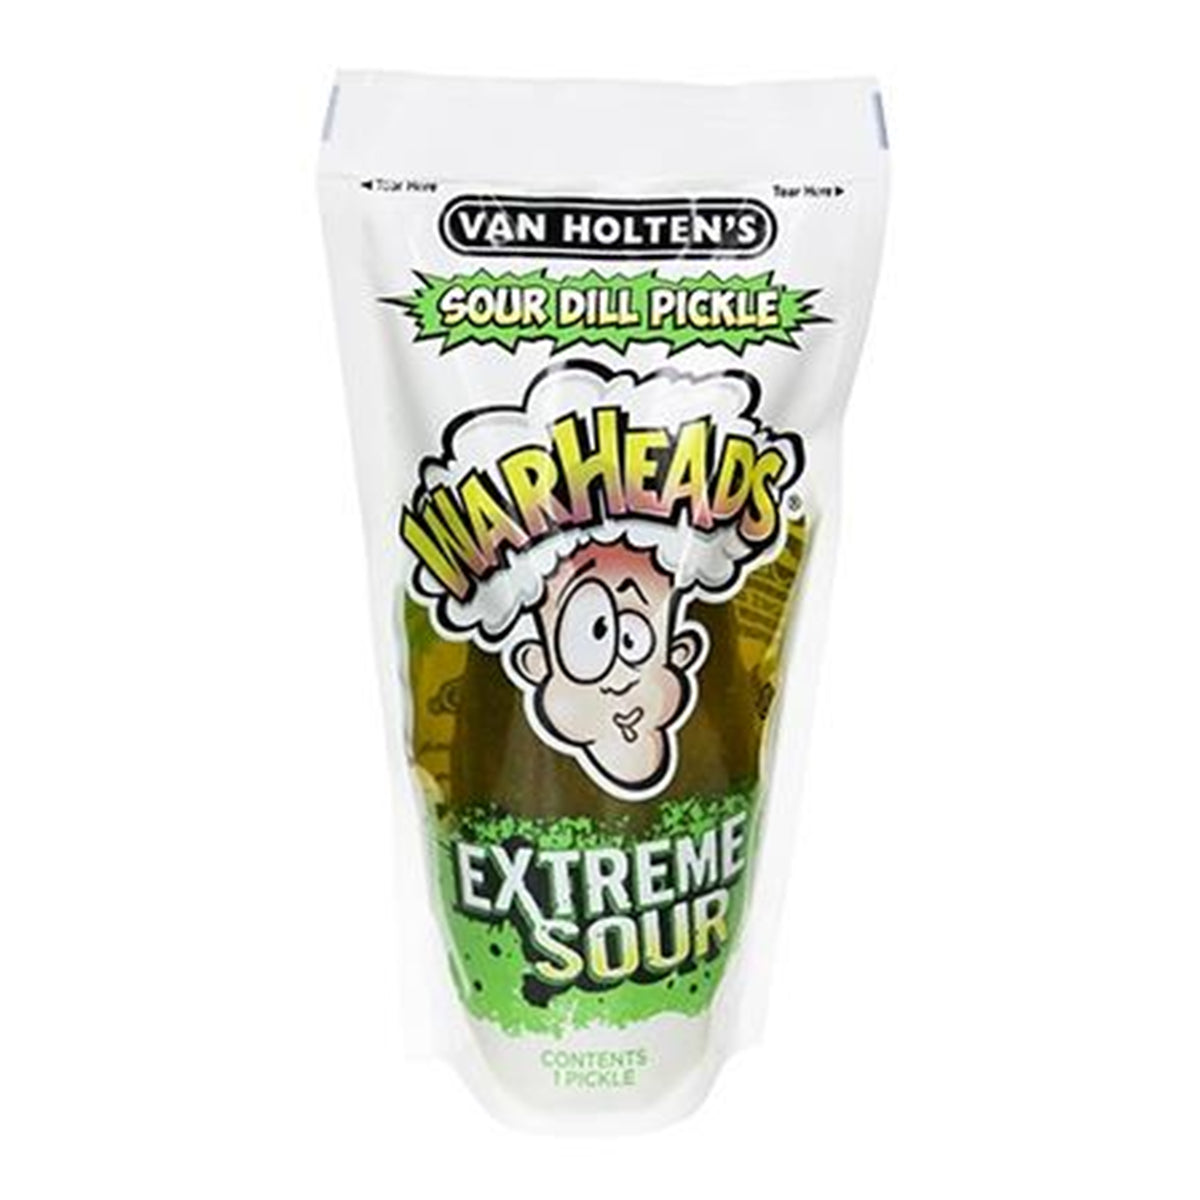 Van Holten Warhead flavoured pickle